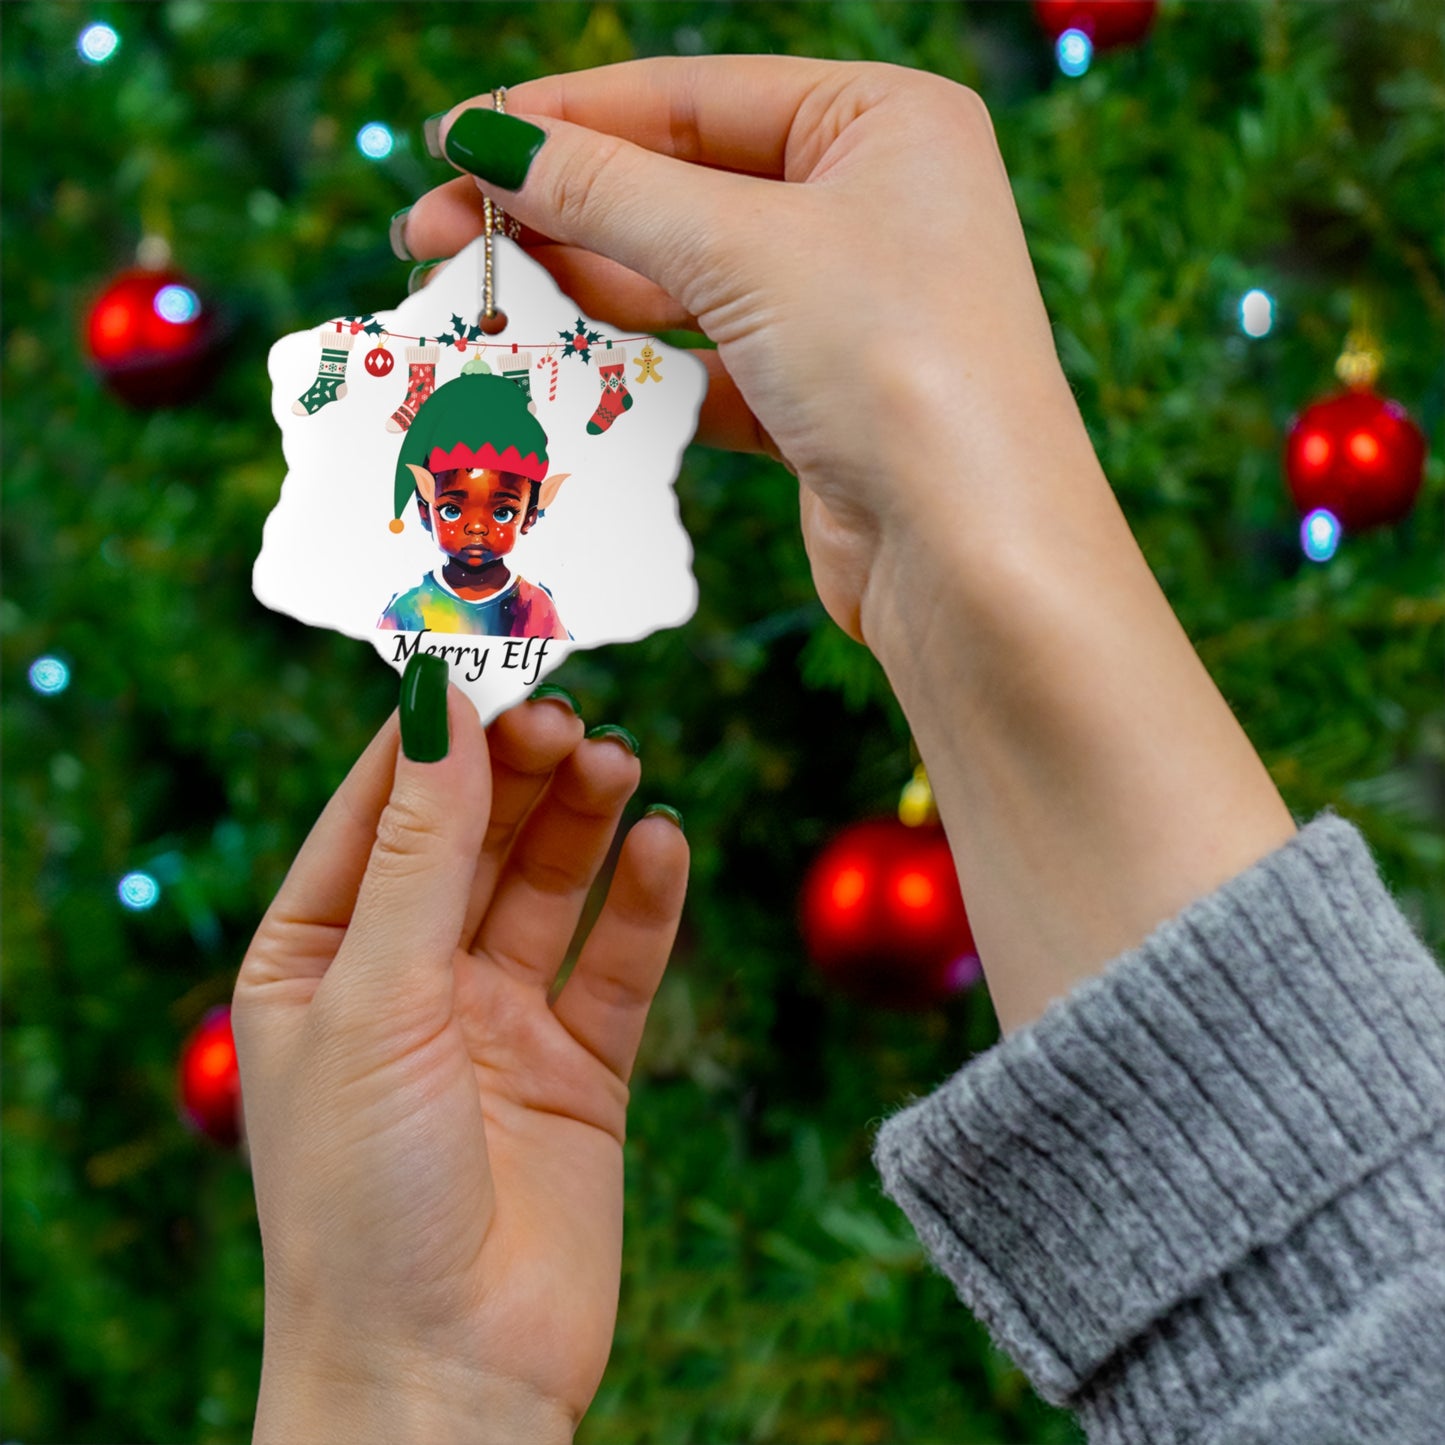 Merry Elf | Ceramic Ornament, 2 Shapes